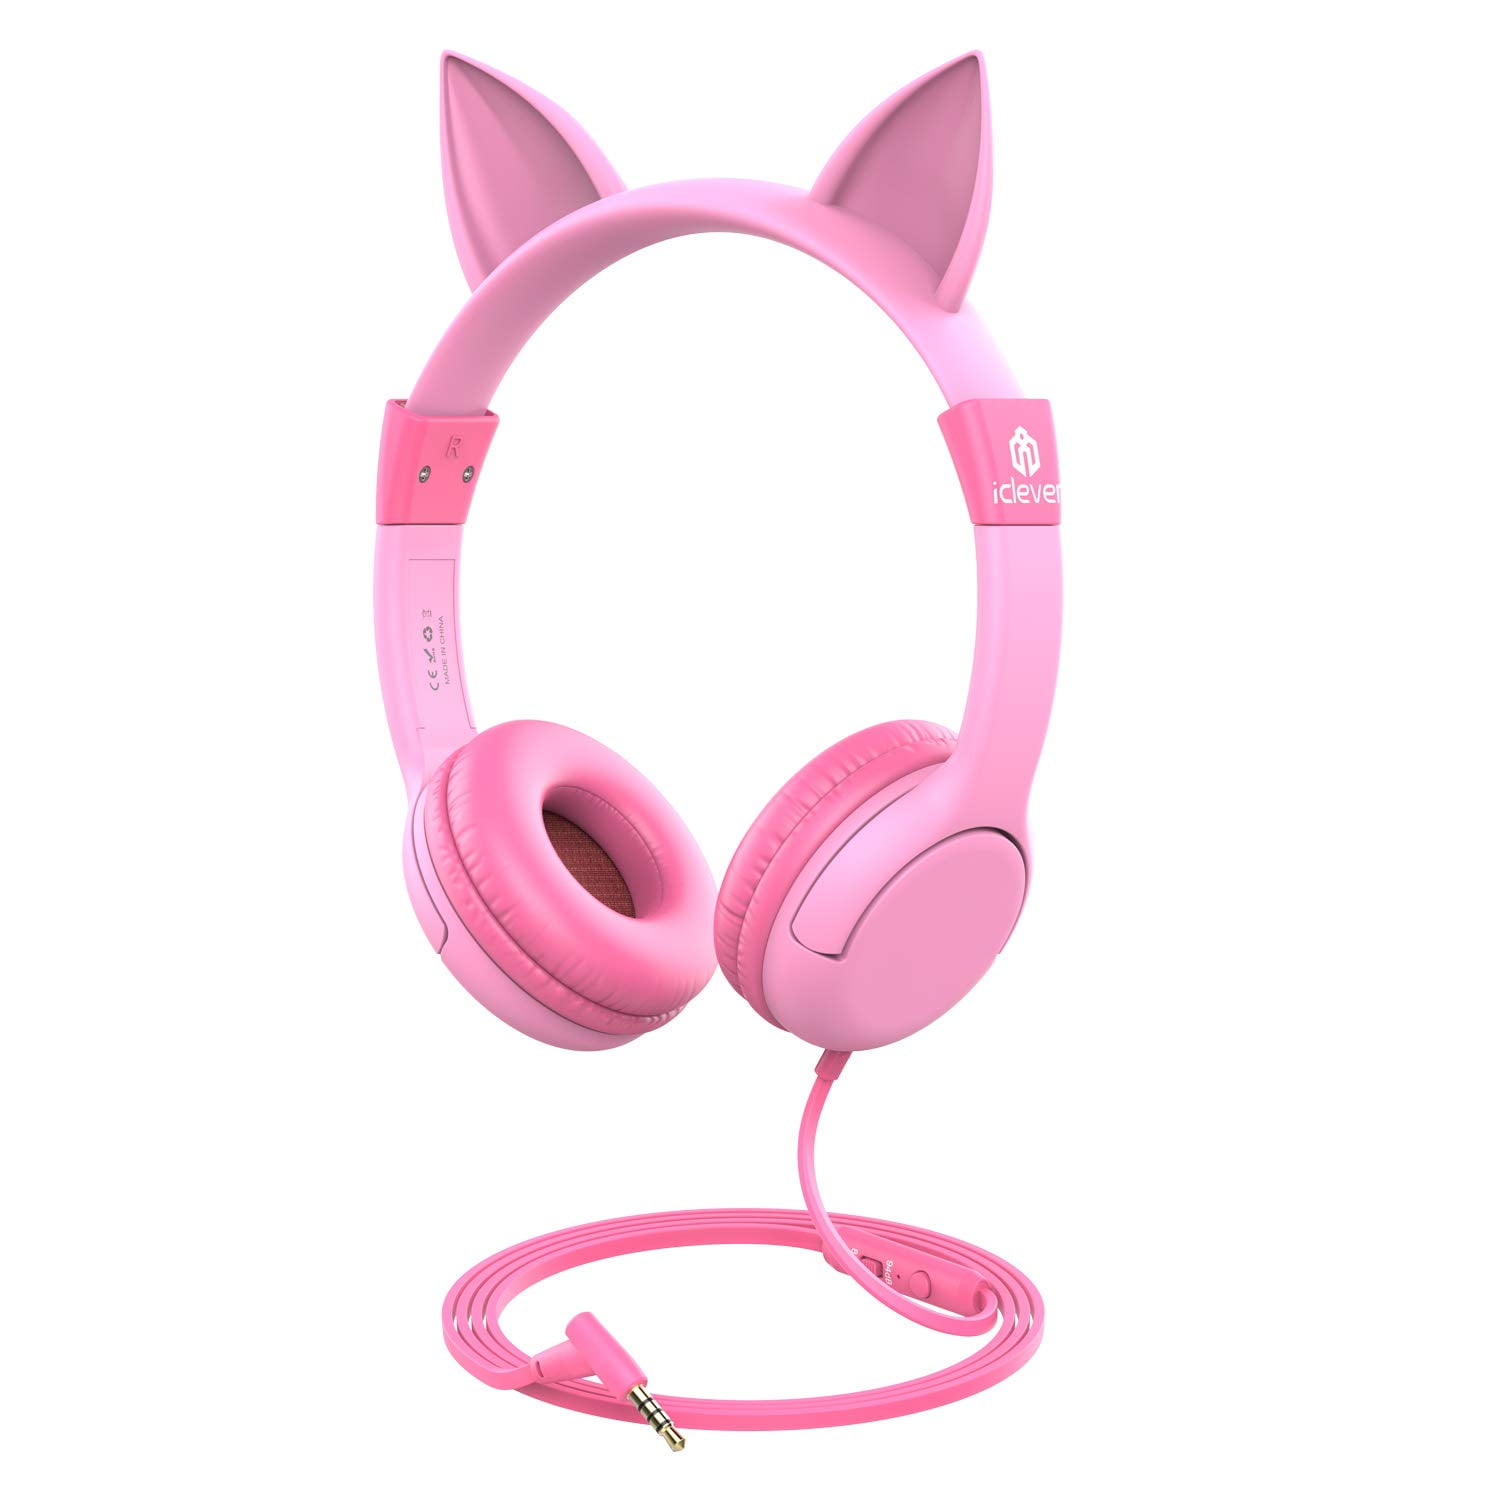 iClever Children's On-Ear Headphones, Pink, IC-HS01 - Walmart.com